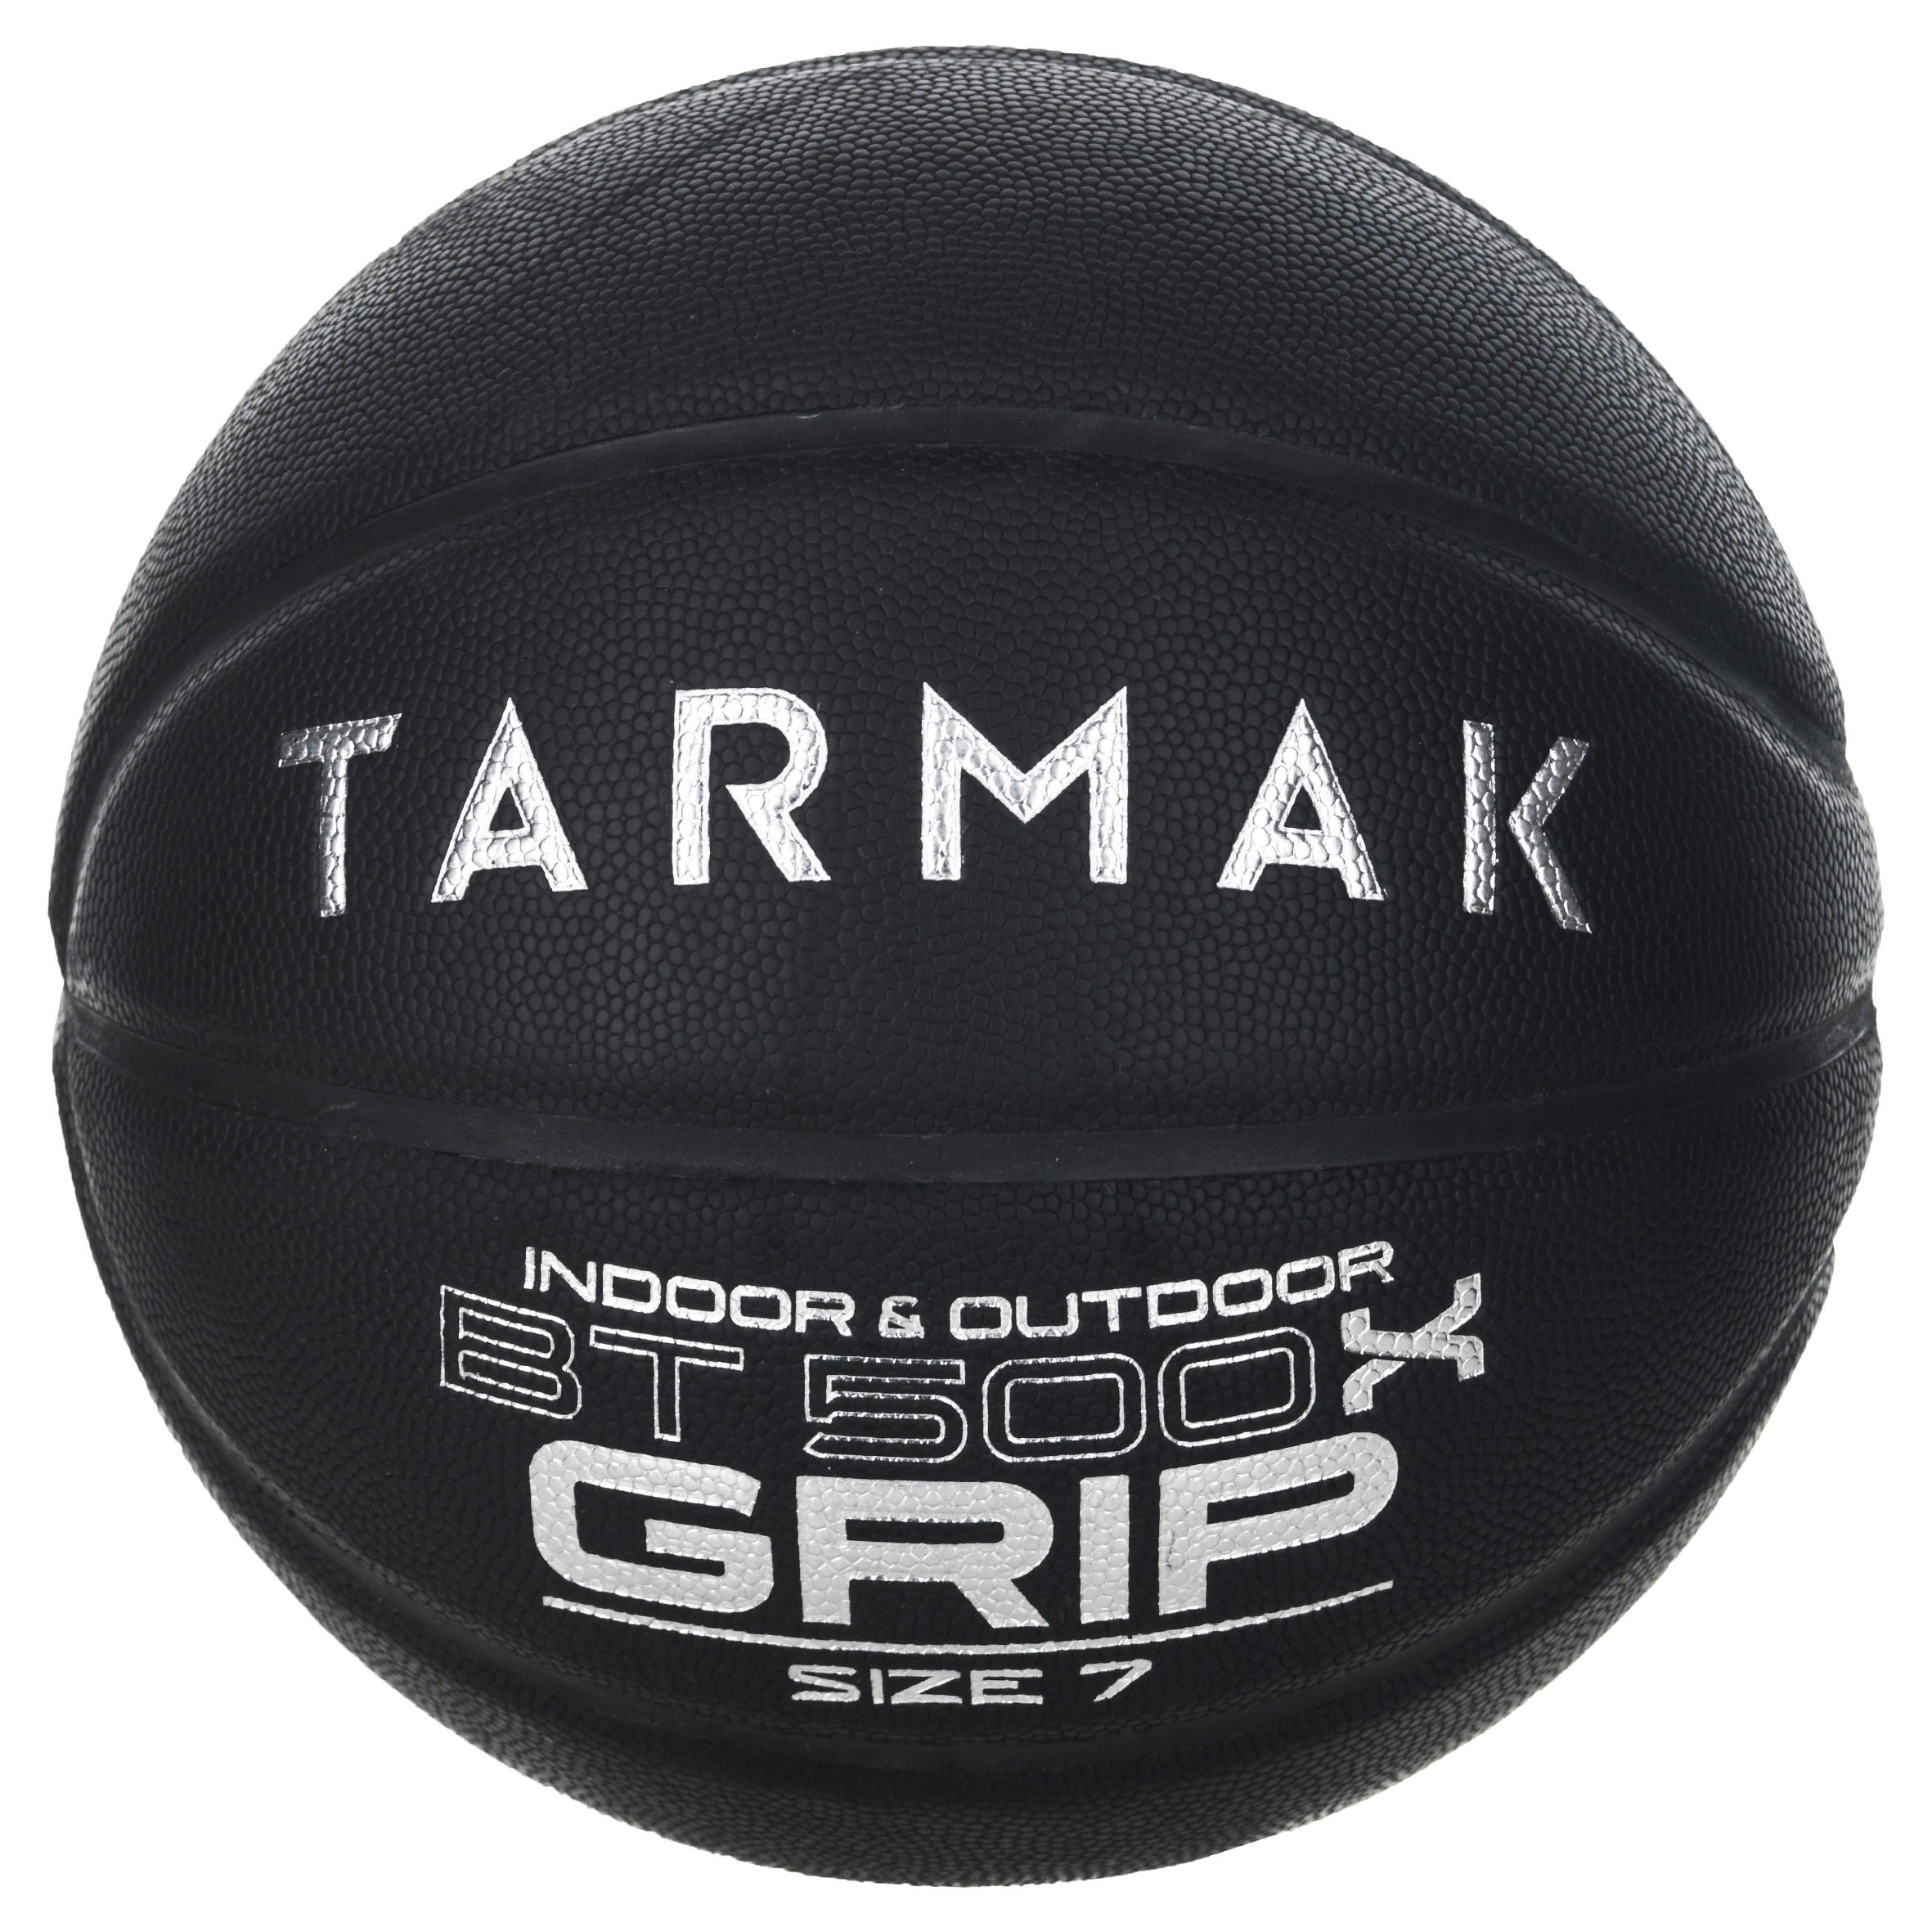 ลูกบาสเก็ตบอลเบอร์ 7 สำหรับผู้ใหญ่รุ่น BT500 Grip (สีดำ) basketball บาสเก็ตบอล ราคาถูกที่สุด